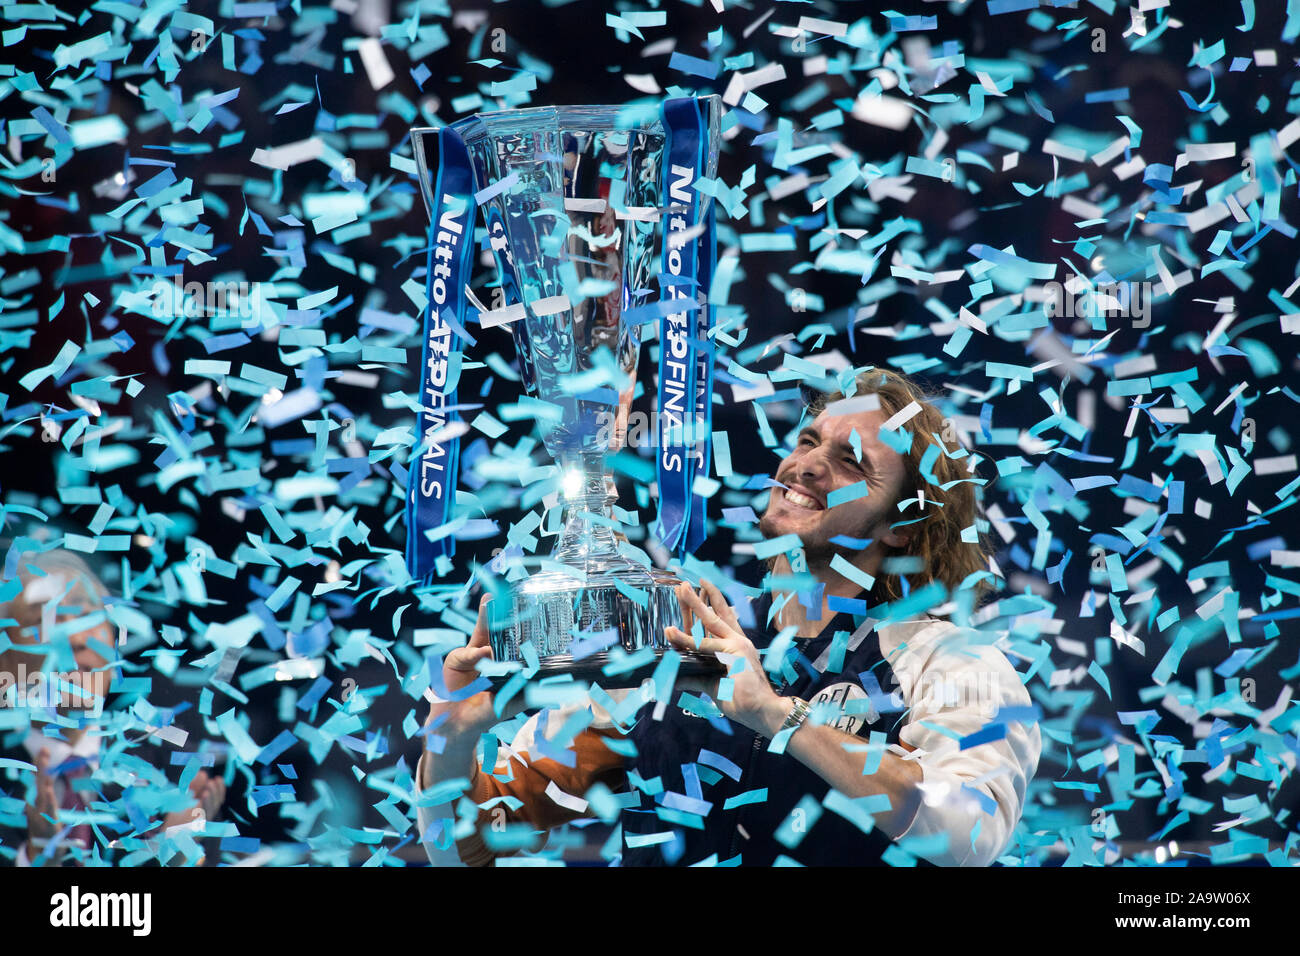 O2, Londres, Royaume-Uni. 17 novembre 2019. Stefanos Tsitsipas prend la des célibataires trophée lors de la finale de l'ATP, en battant Nitto Dominic Thiem. Credit : Malcolm Park/Alamy Live News Banque D'Images